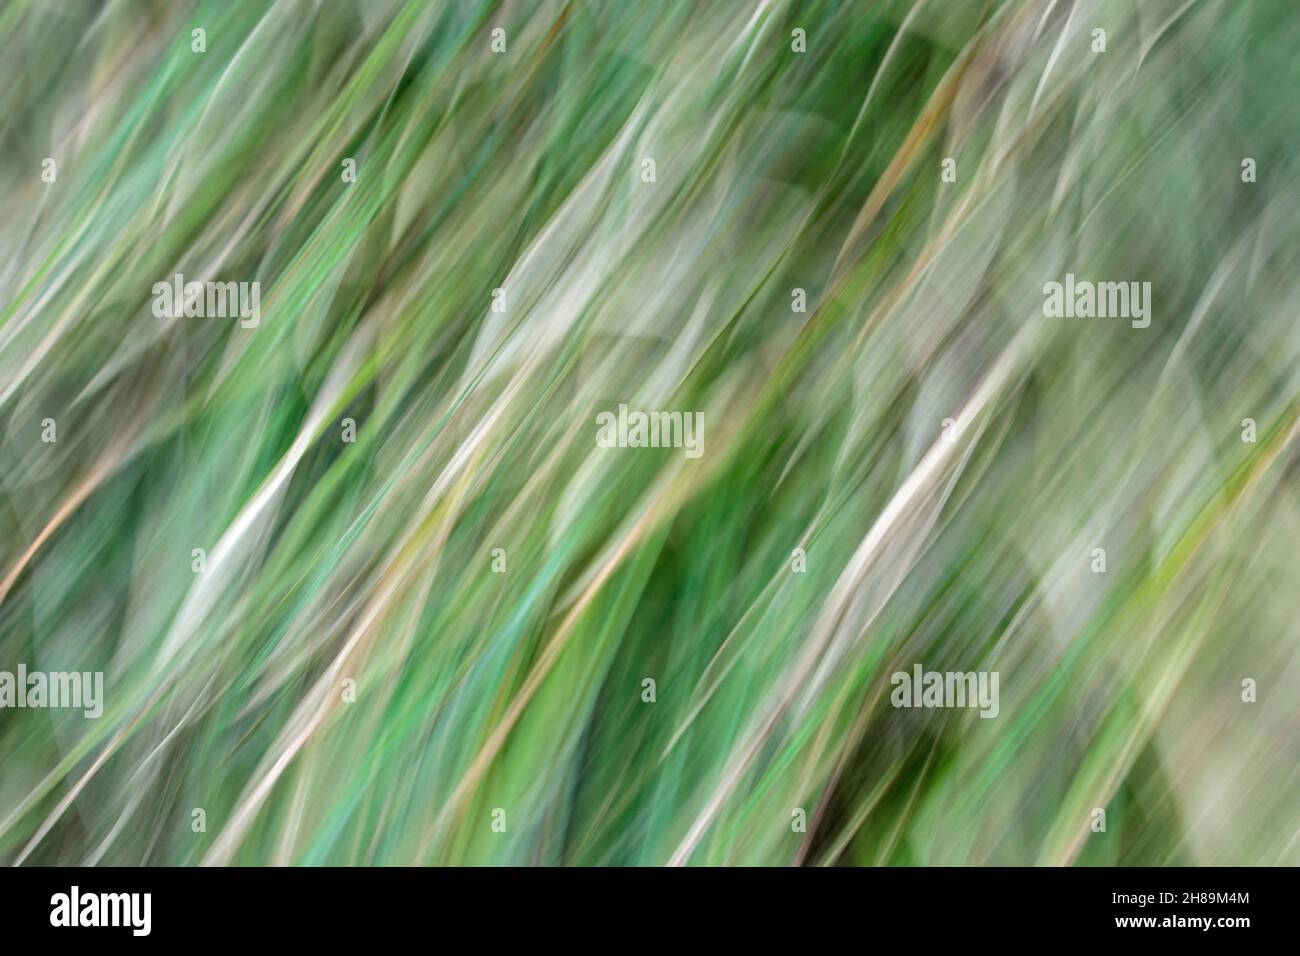 Sfocatura astratta del movimento morbido con linee diagonali sinuose di ontano di colore giallo tra le tonalità verdi di un abete (movimento intenzionale della macchina fotografica). Foto Stock